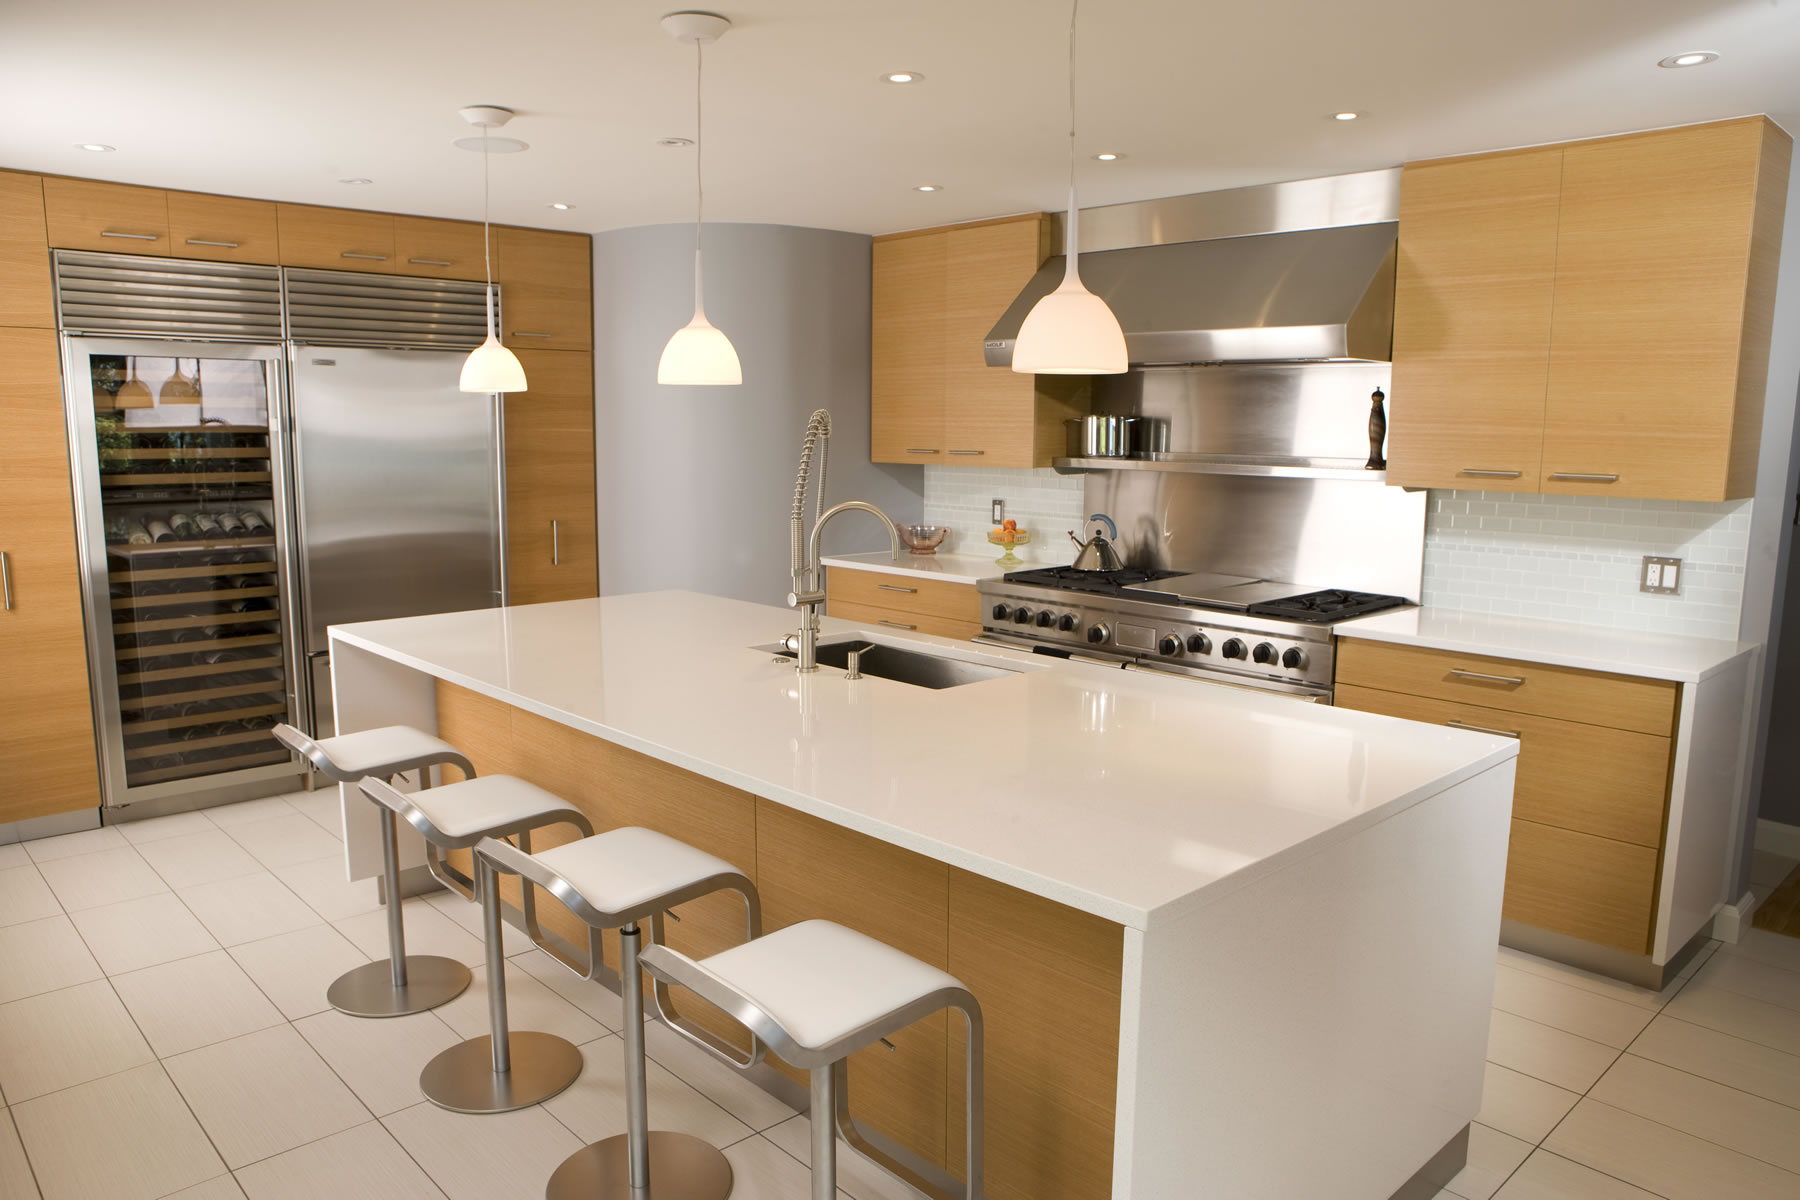 چگونه بهترین طرح و سبک را برای آشپزخانه خود پیدا کنیم؟ | راهنمای انتخاب سبک کابینت آشپزخانه